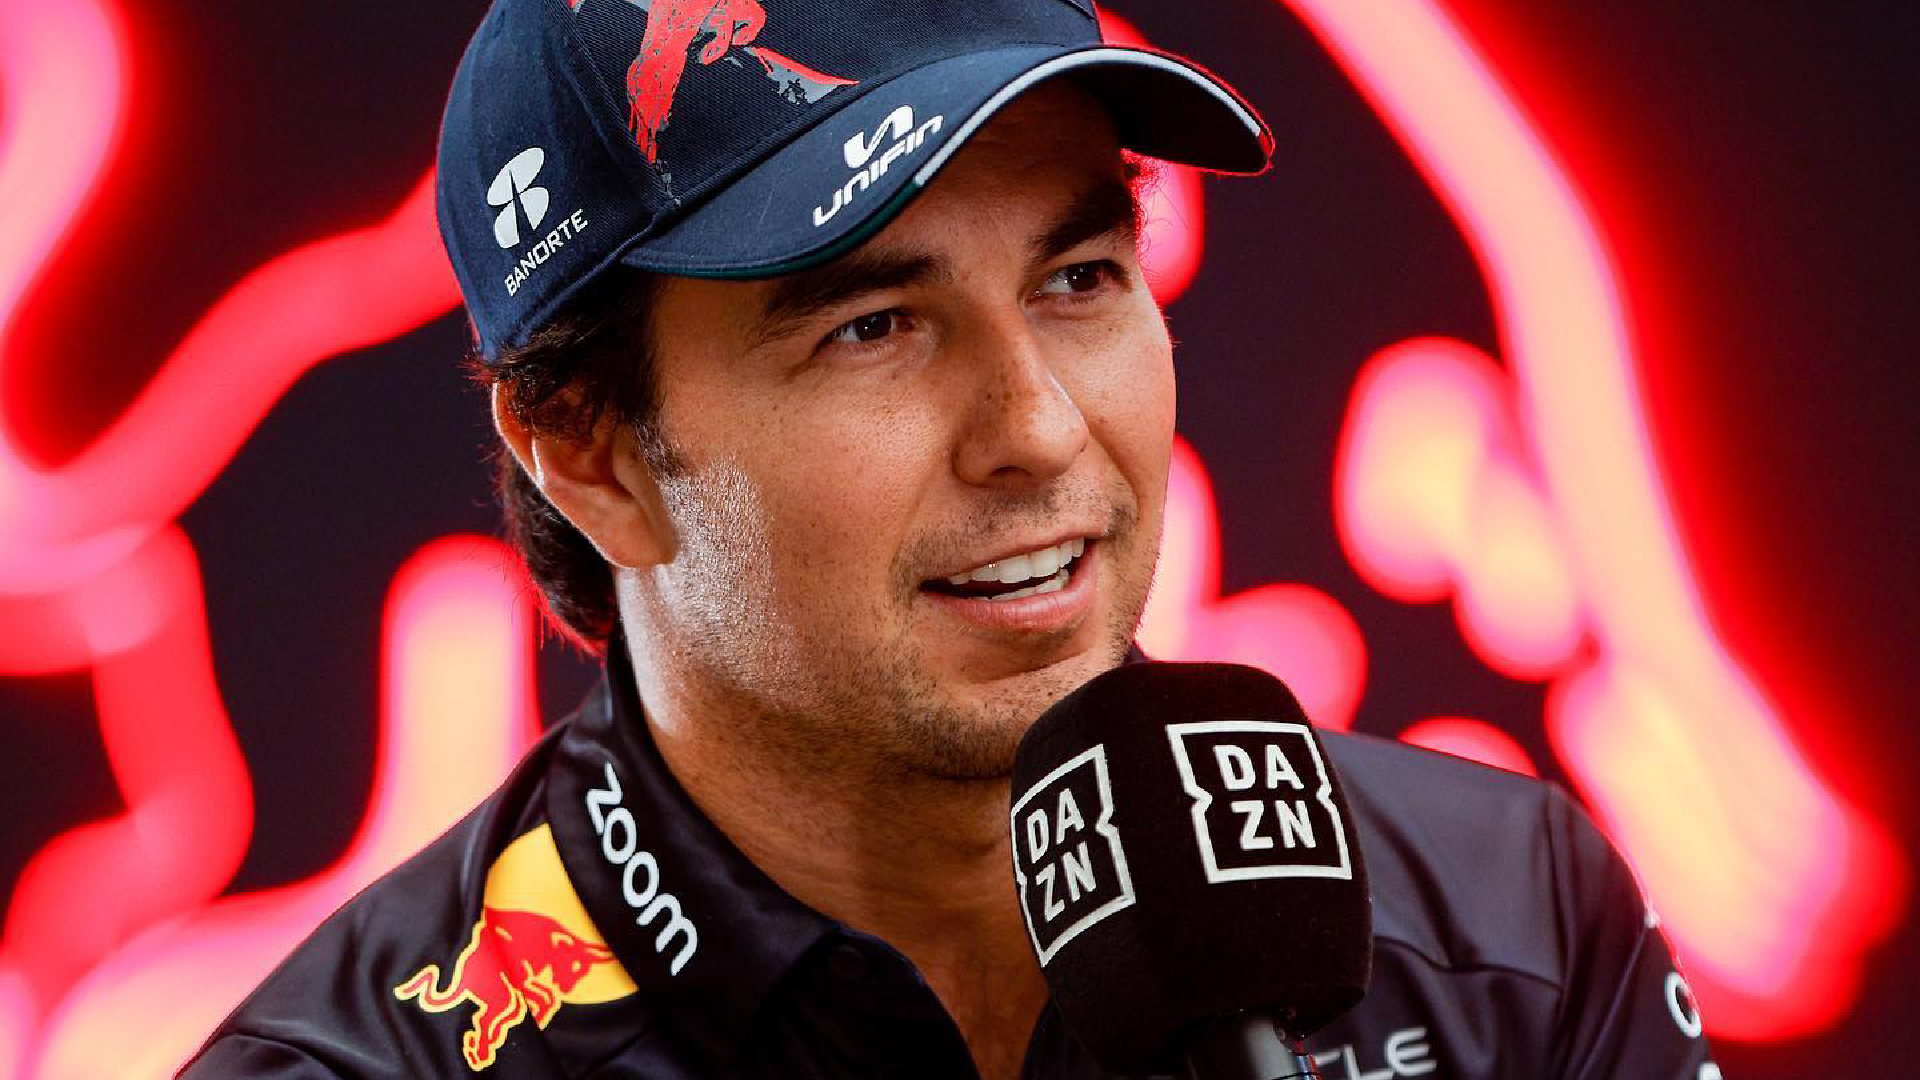 Checo Pérez peleará por el campeonato de la F1 en la temporada 2023: “Estoy en mi mejor momento”